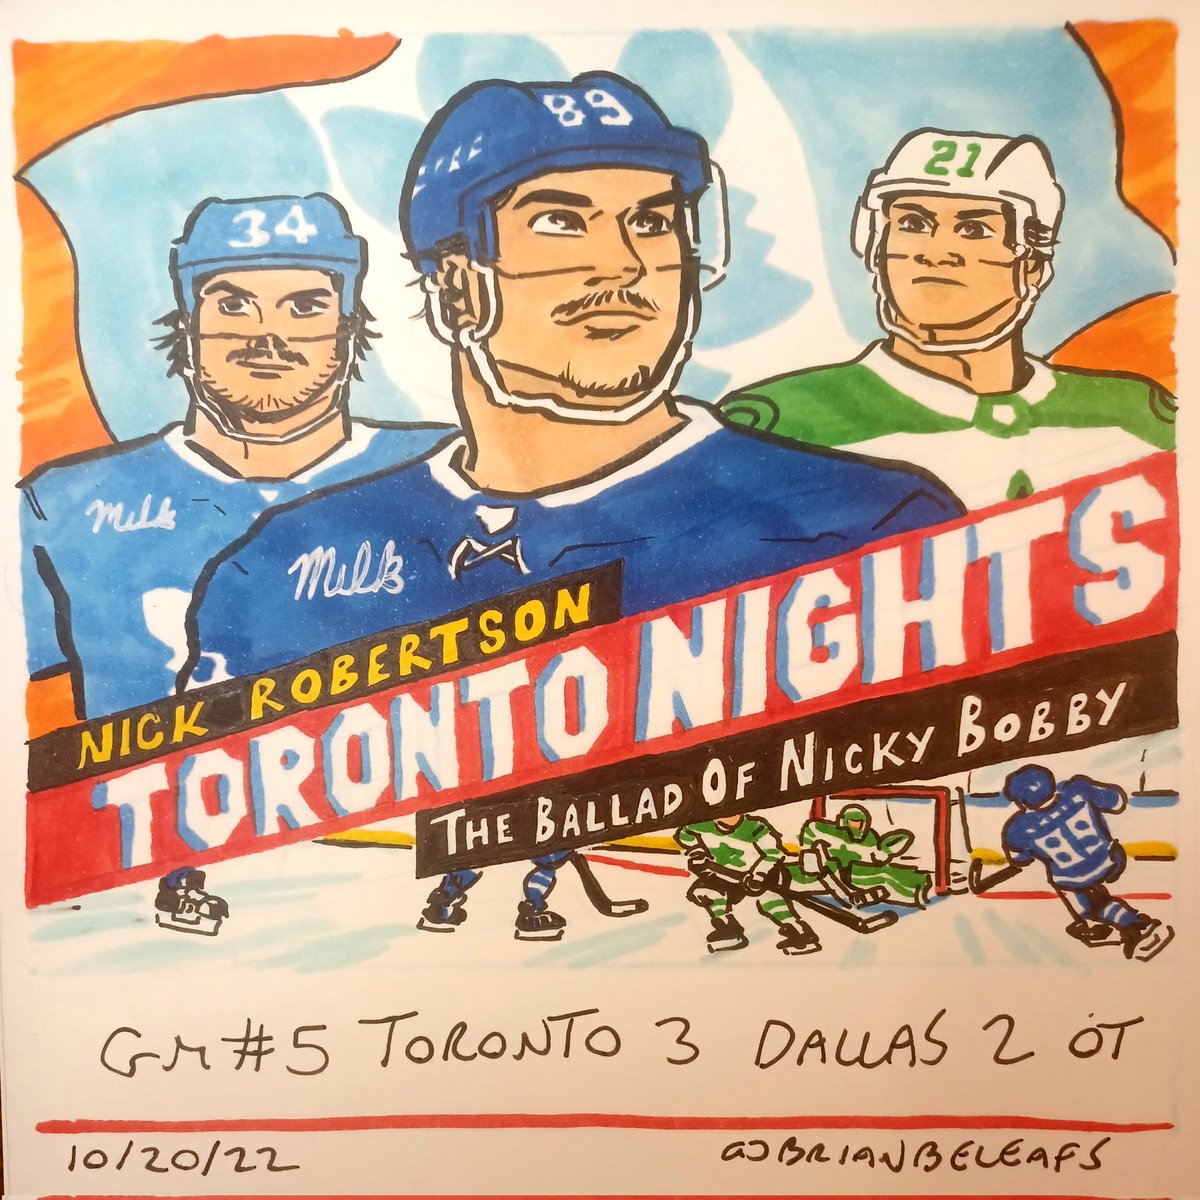 Game #5 Toronto 3 V Dallas 2 #LeafsForever #TorontoMapleLeafs  #GoLeafsGo #LeafsNation
#NickRobertson #AustonMatthews #JasonRobertson #TalladegaNights #NickyBobby #LittleNicky